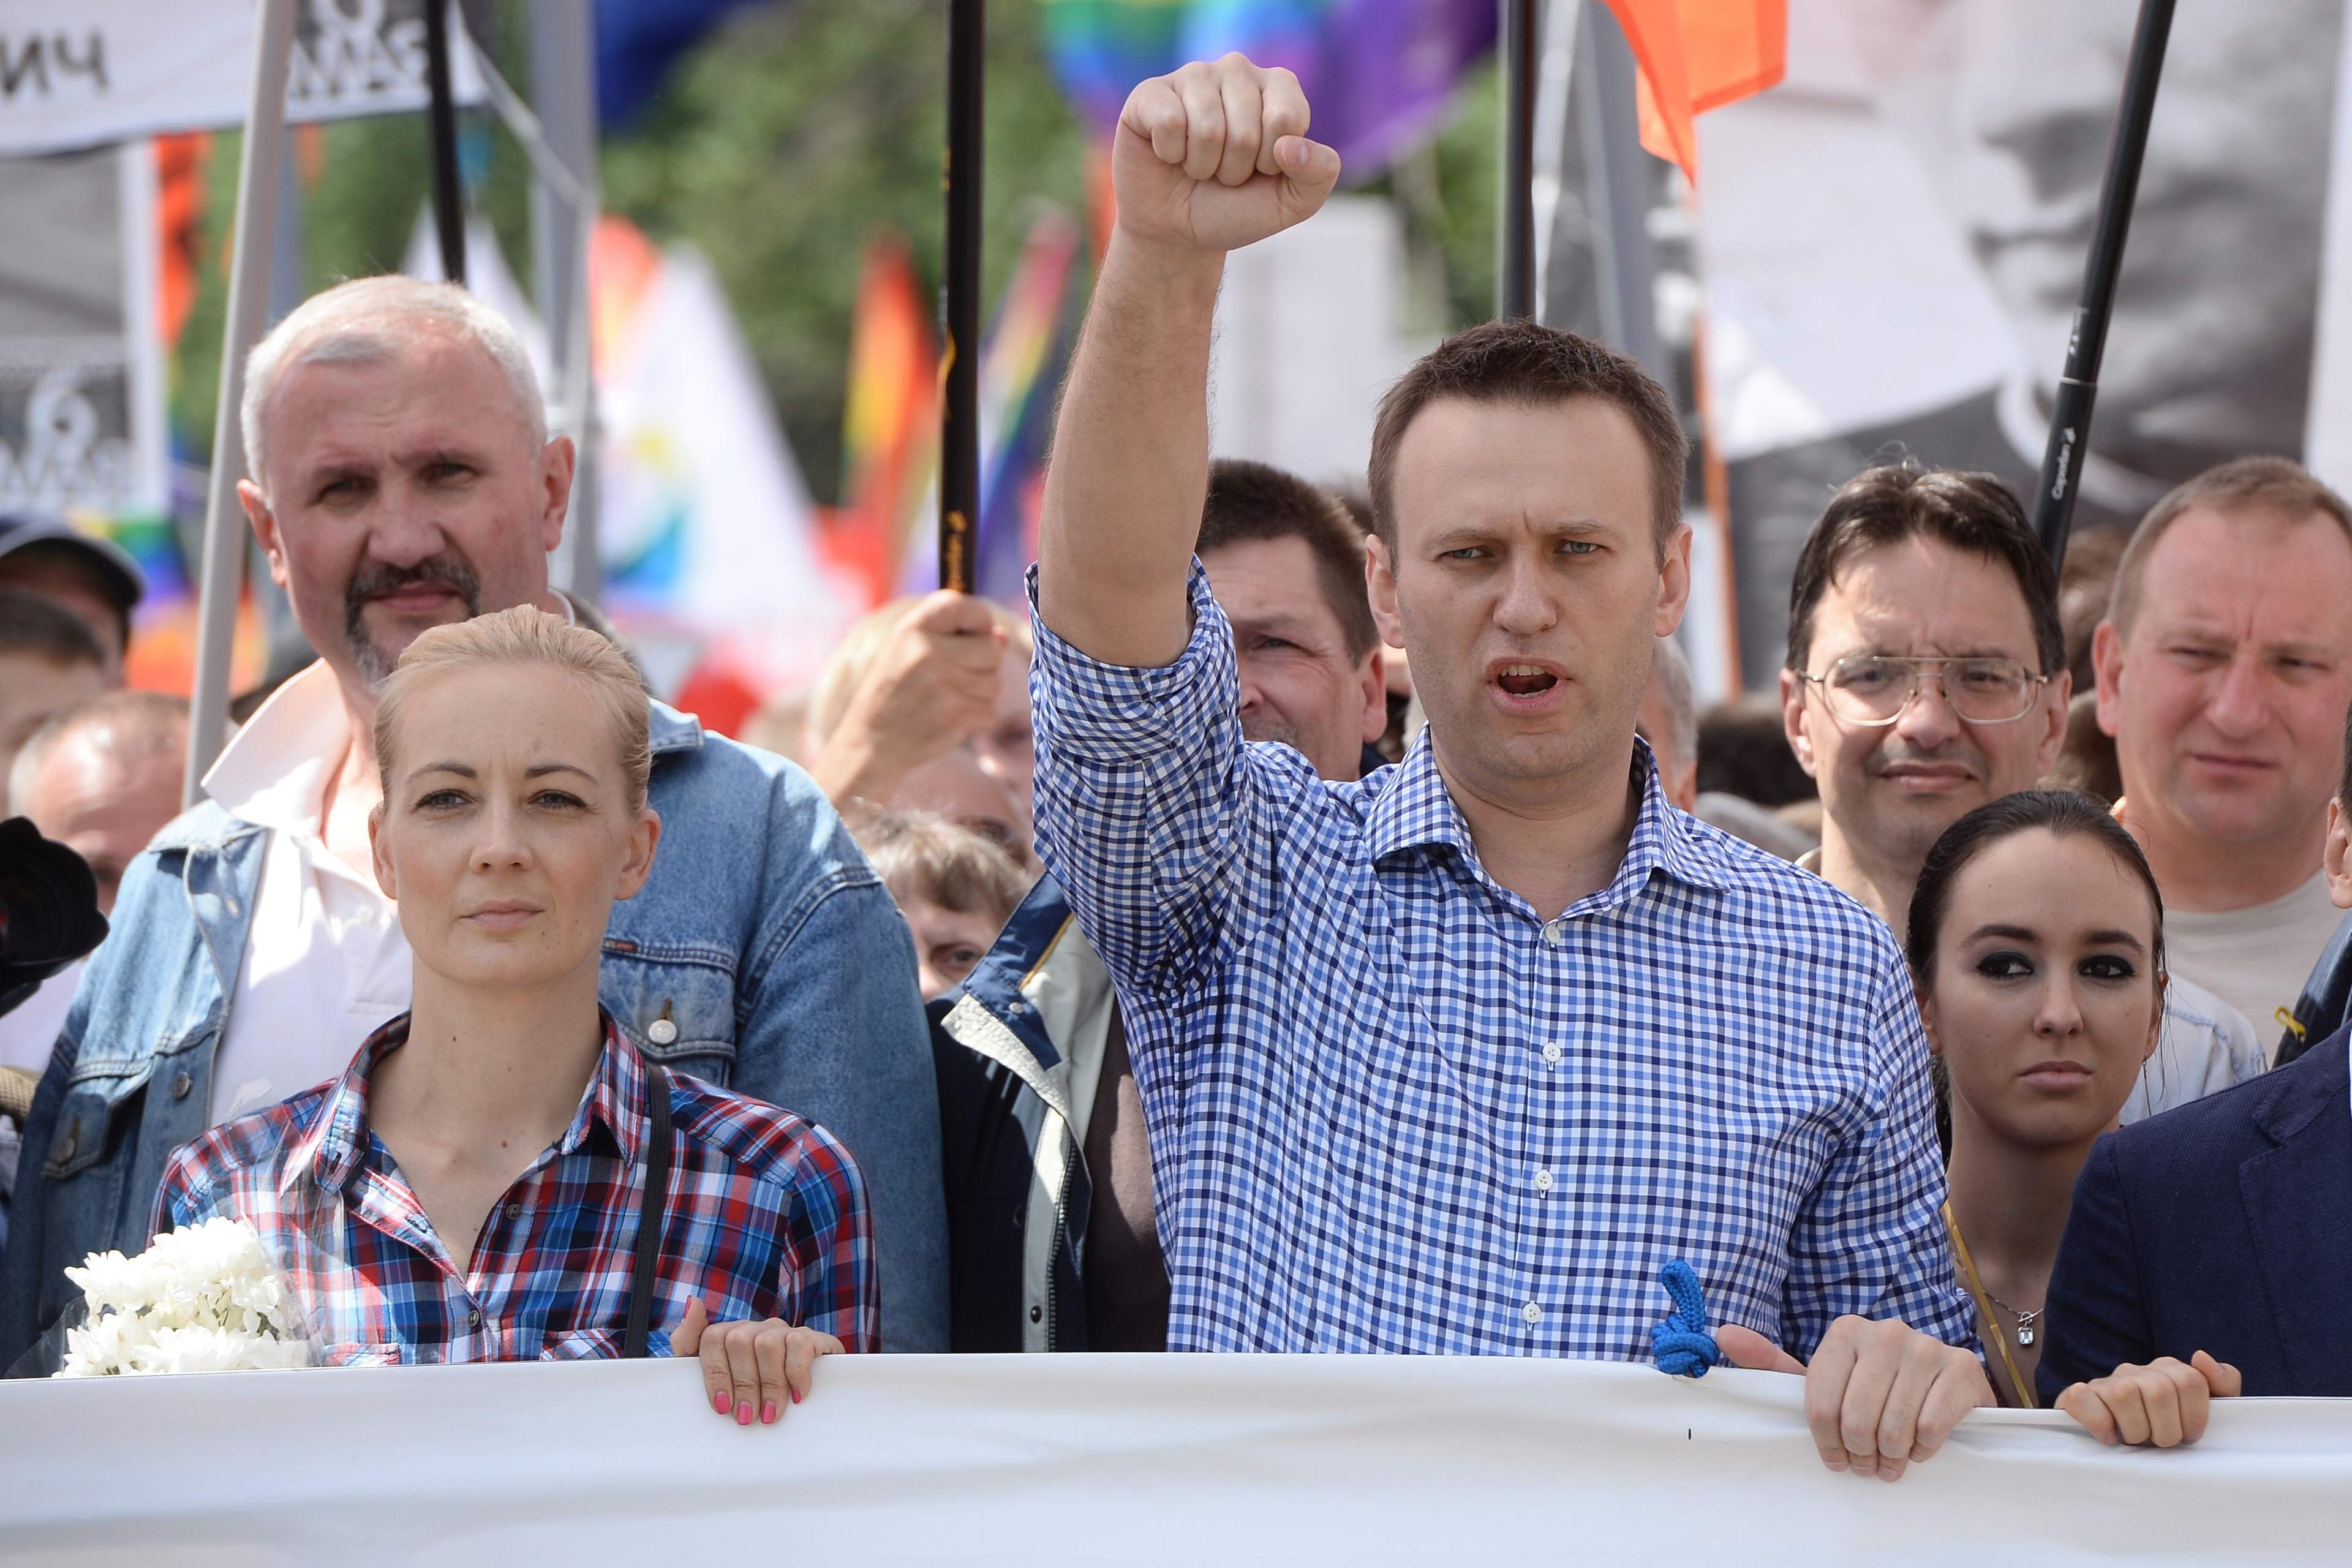 El certificado de defunción de Navalni: "muerte súbita" y las autoridades no quieren entregar el cuerpo